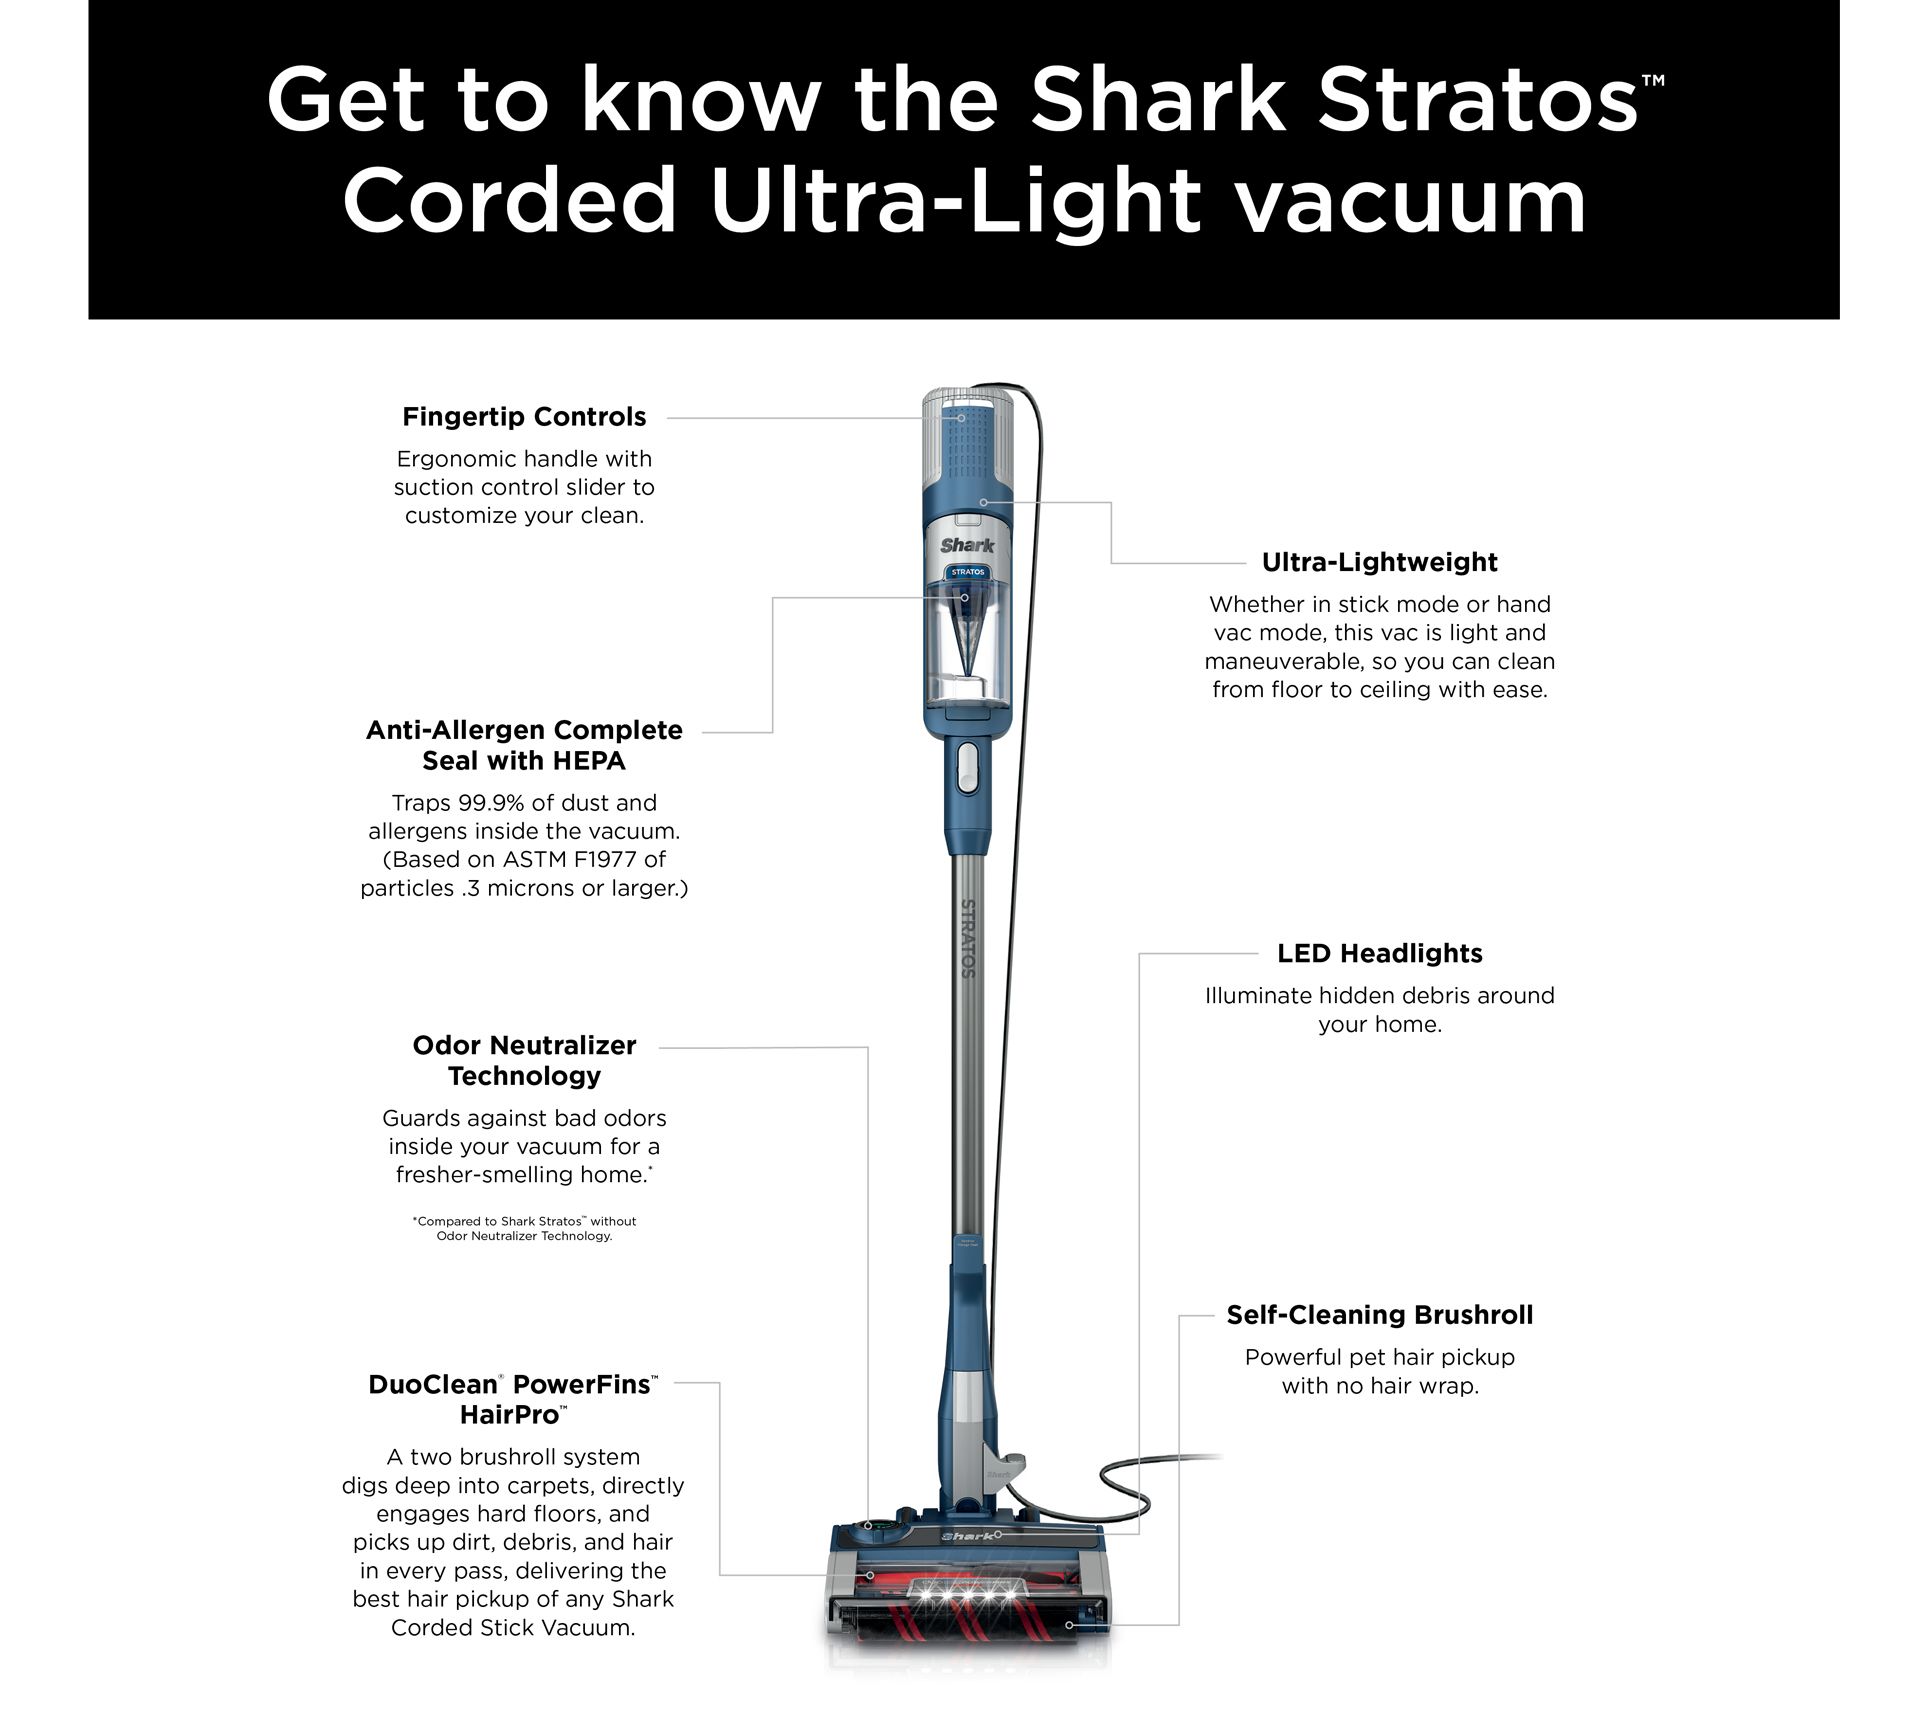 My Favorite Cordless Vacuum  Shark Duo Clean Review 